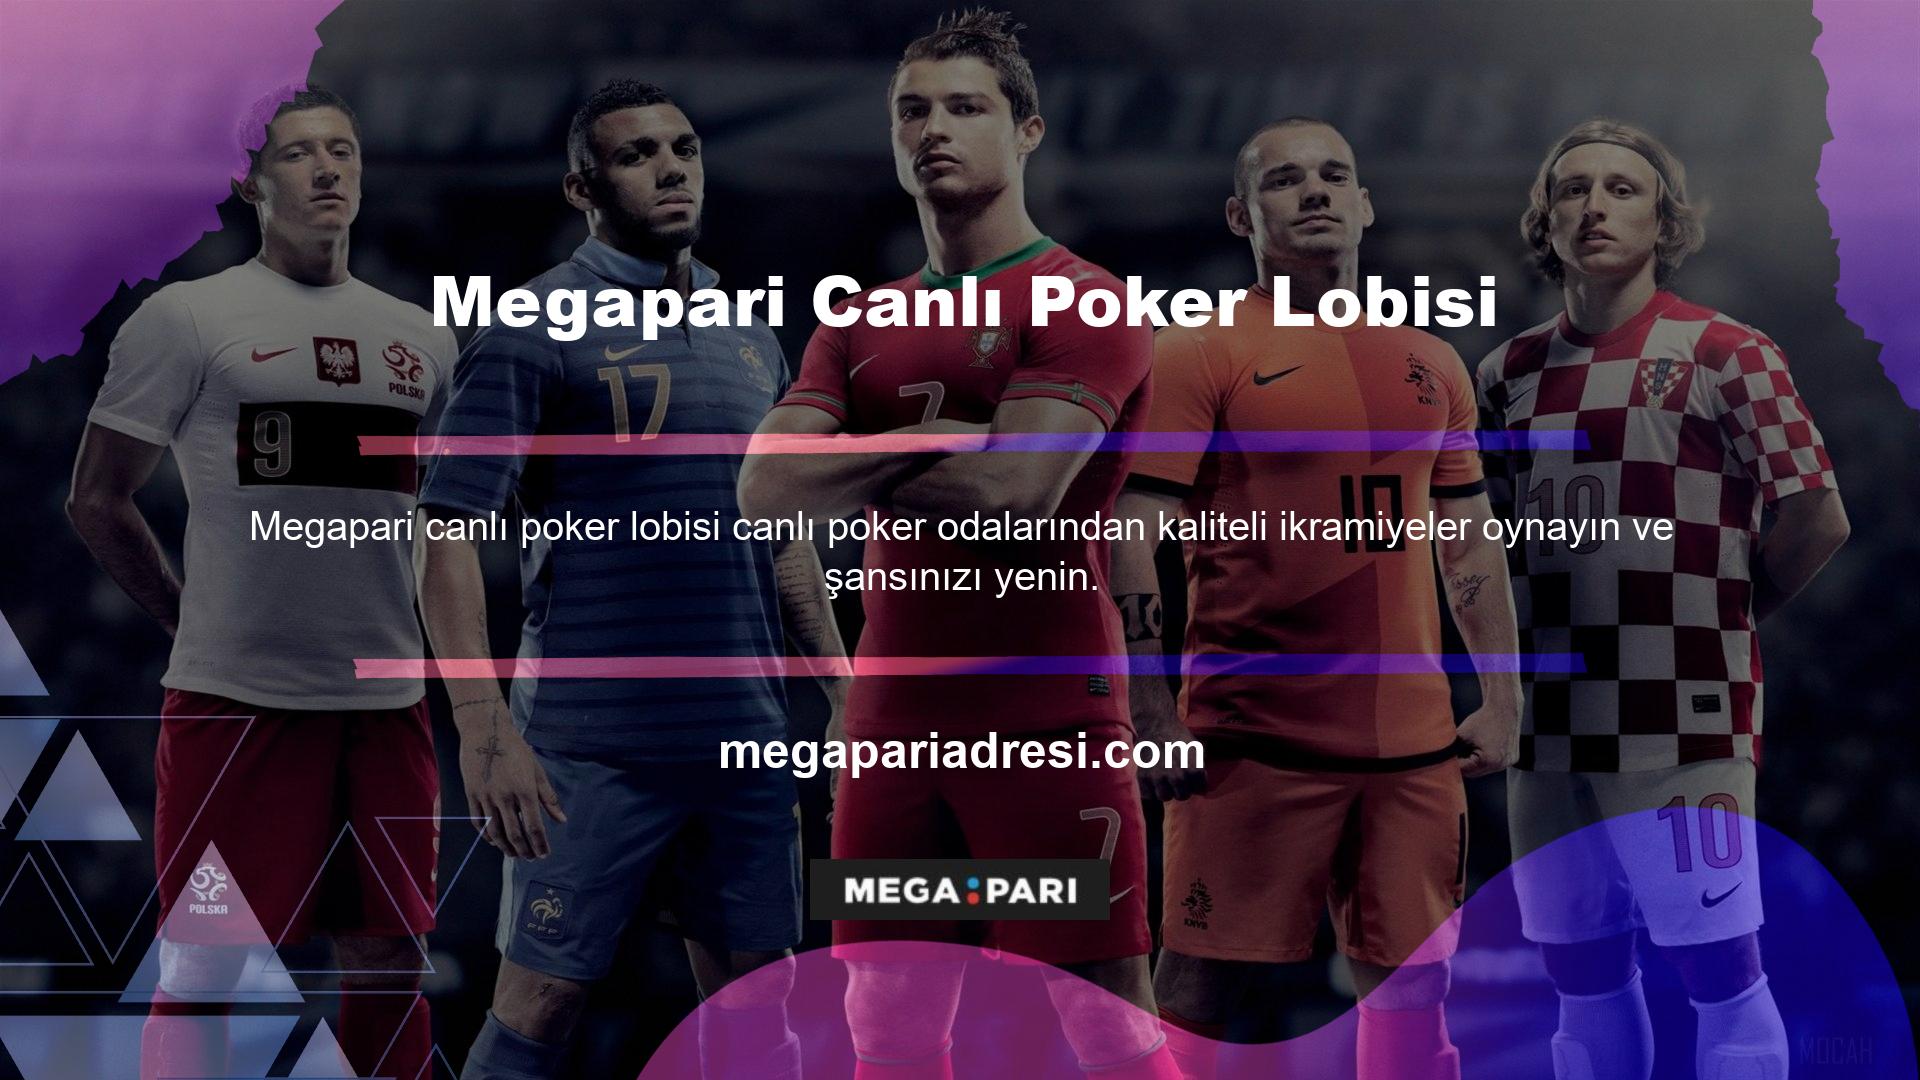 Büyük ikramiyenin yanı sıra, Megapari casino makinesi hizmeti, klasik slotlar ve video slotlar da dahil olmak üzere çeşitli slotlar sunar